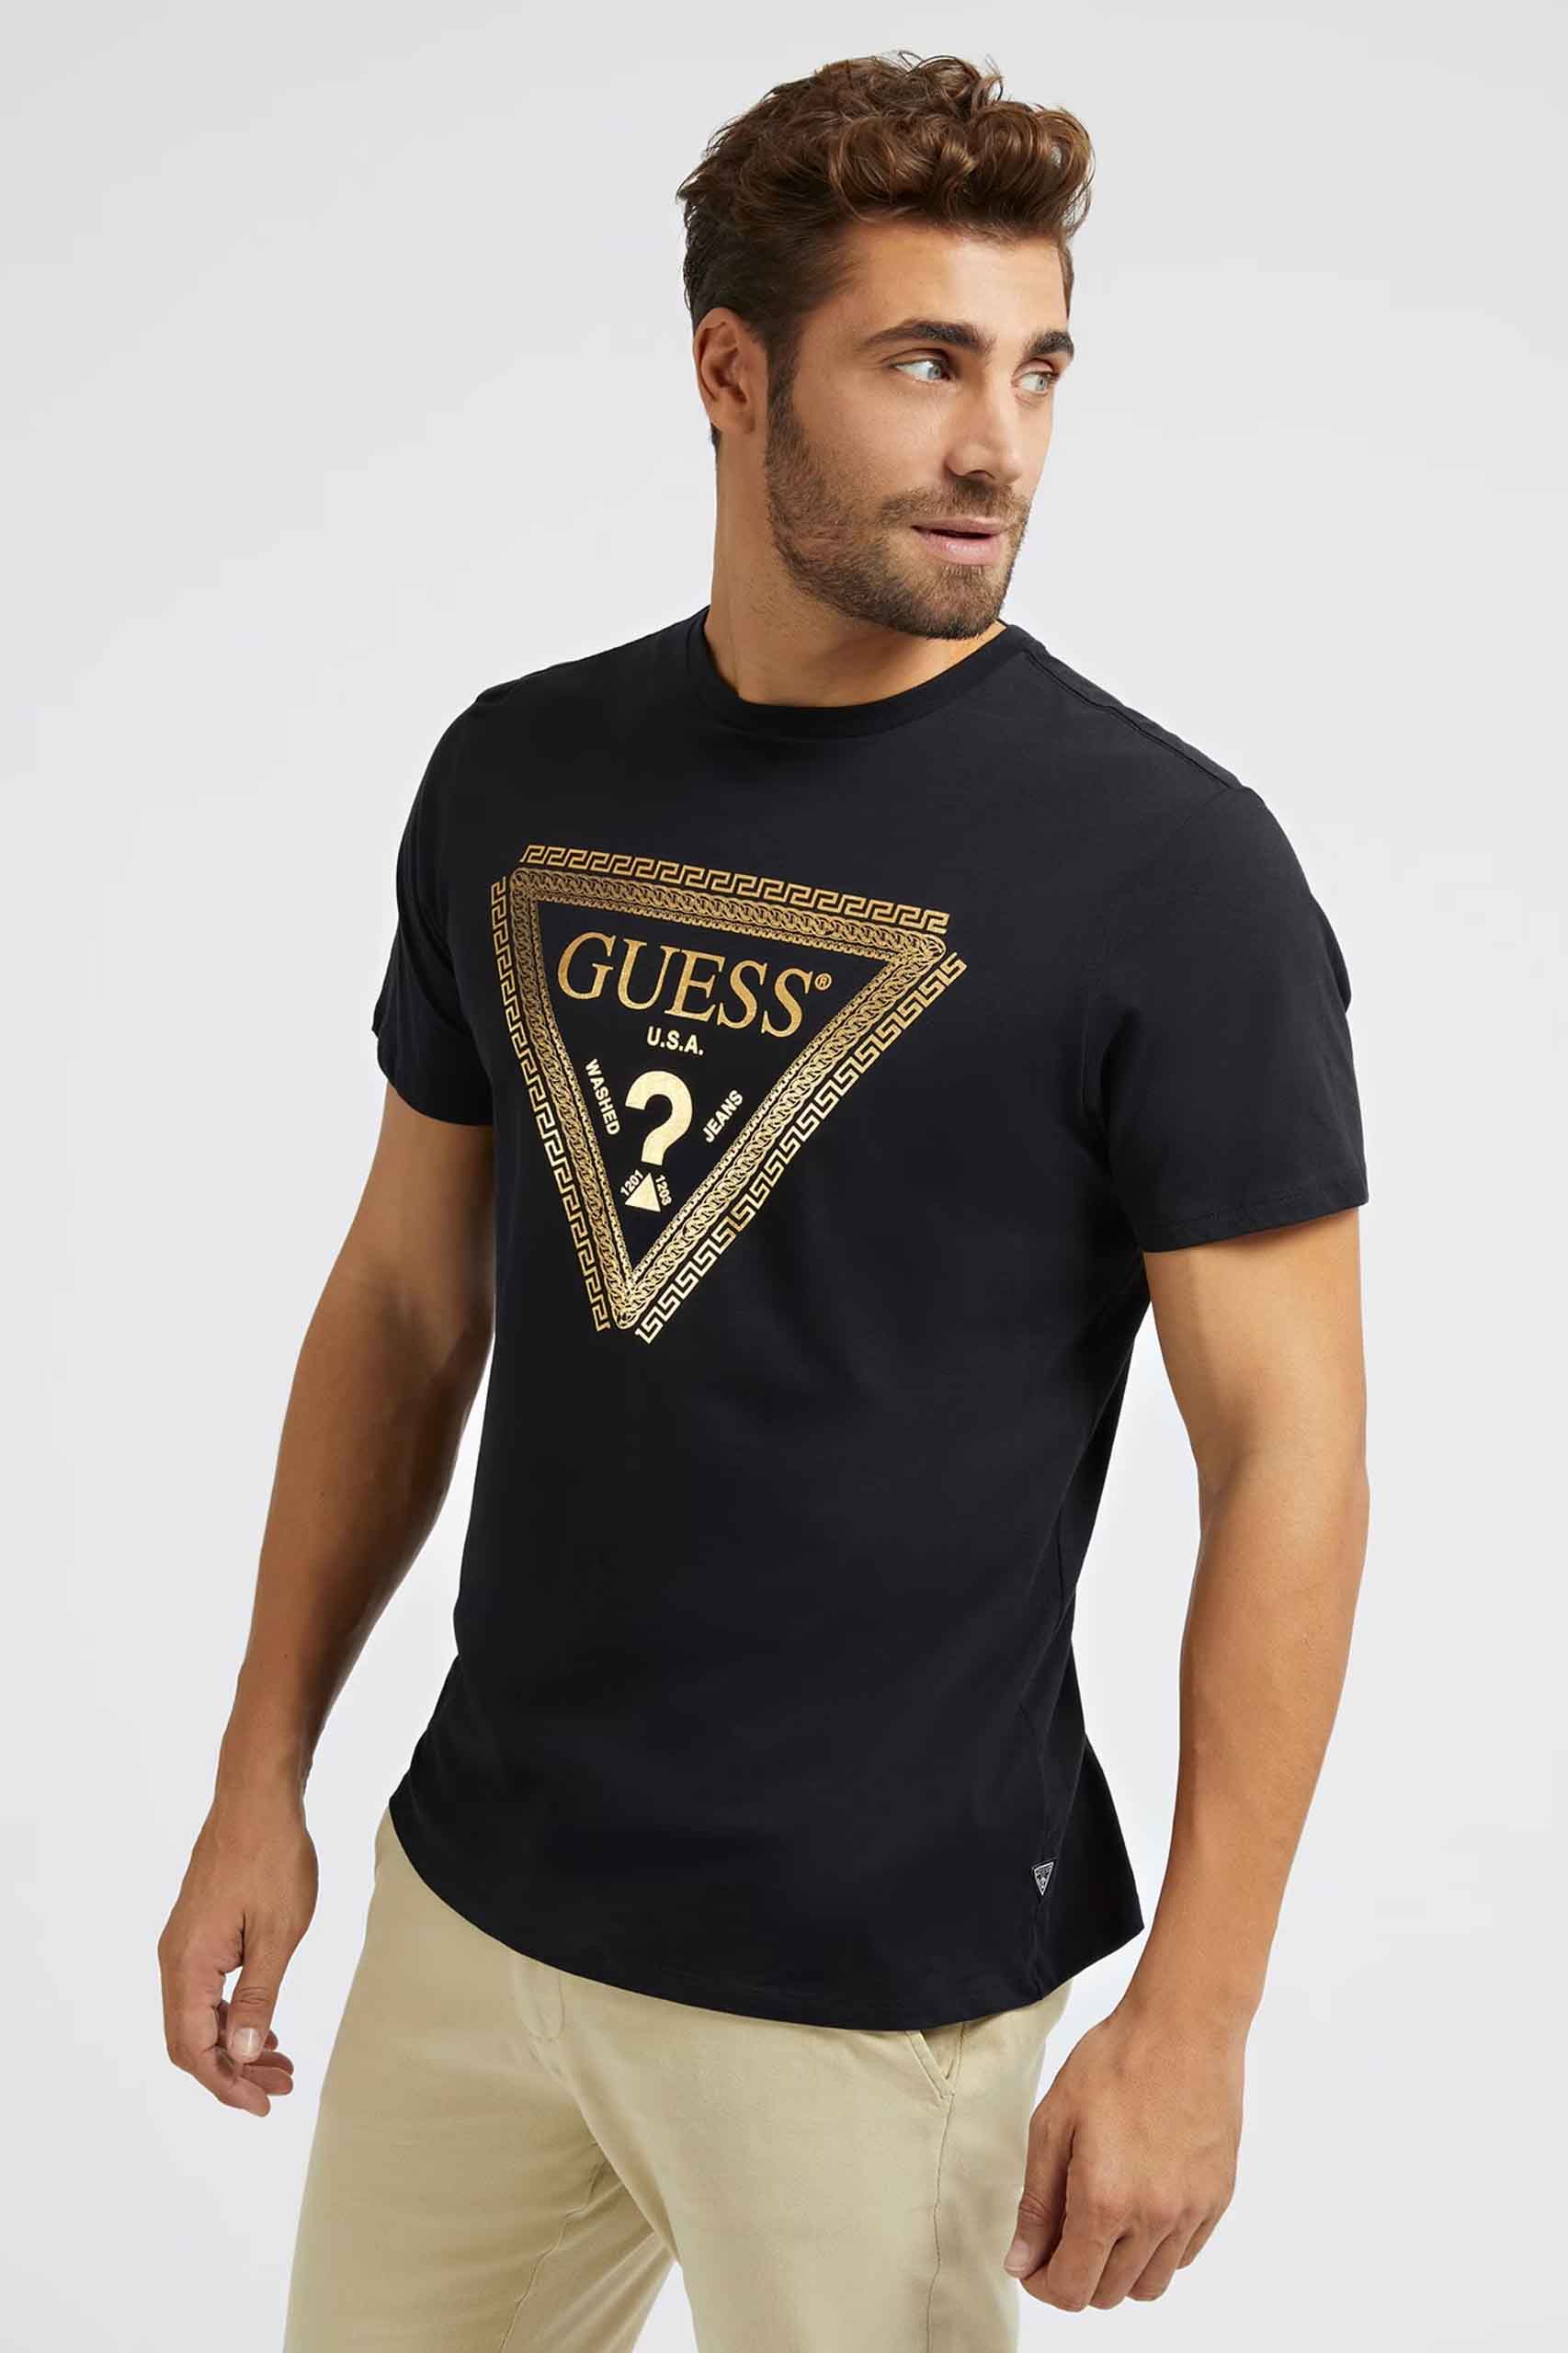 léxico lecho Genealogía Camiseta de la marca Guess Jeans de color Negro para hombre